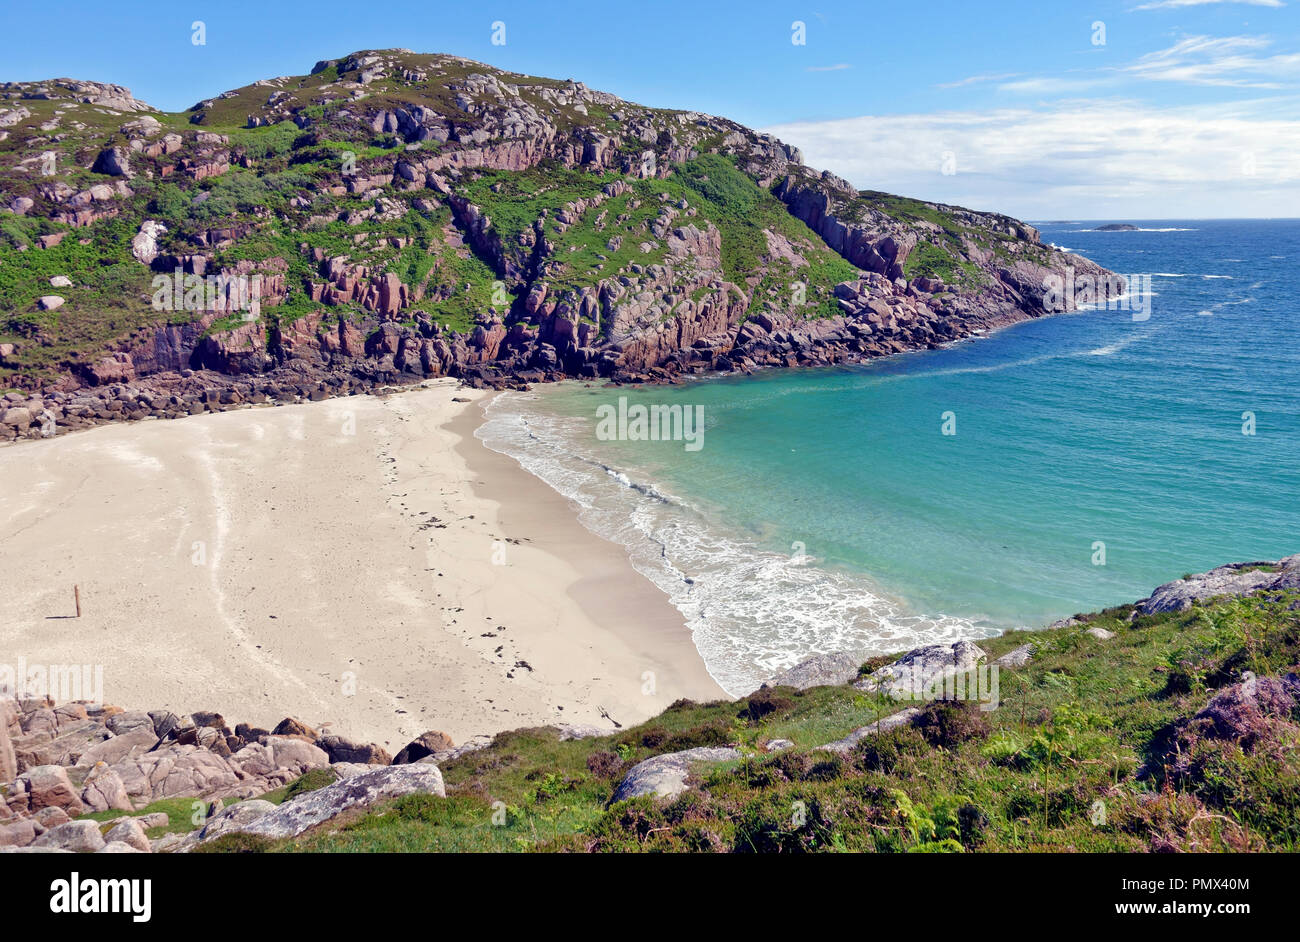 Playa de arena blanca conocida localmente como "Balfour's Bay en la isla de Erraid una isla de marea en el interior de las Islas Hébridas de Escocia. Foto de stock